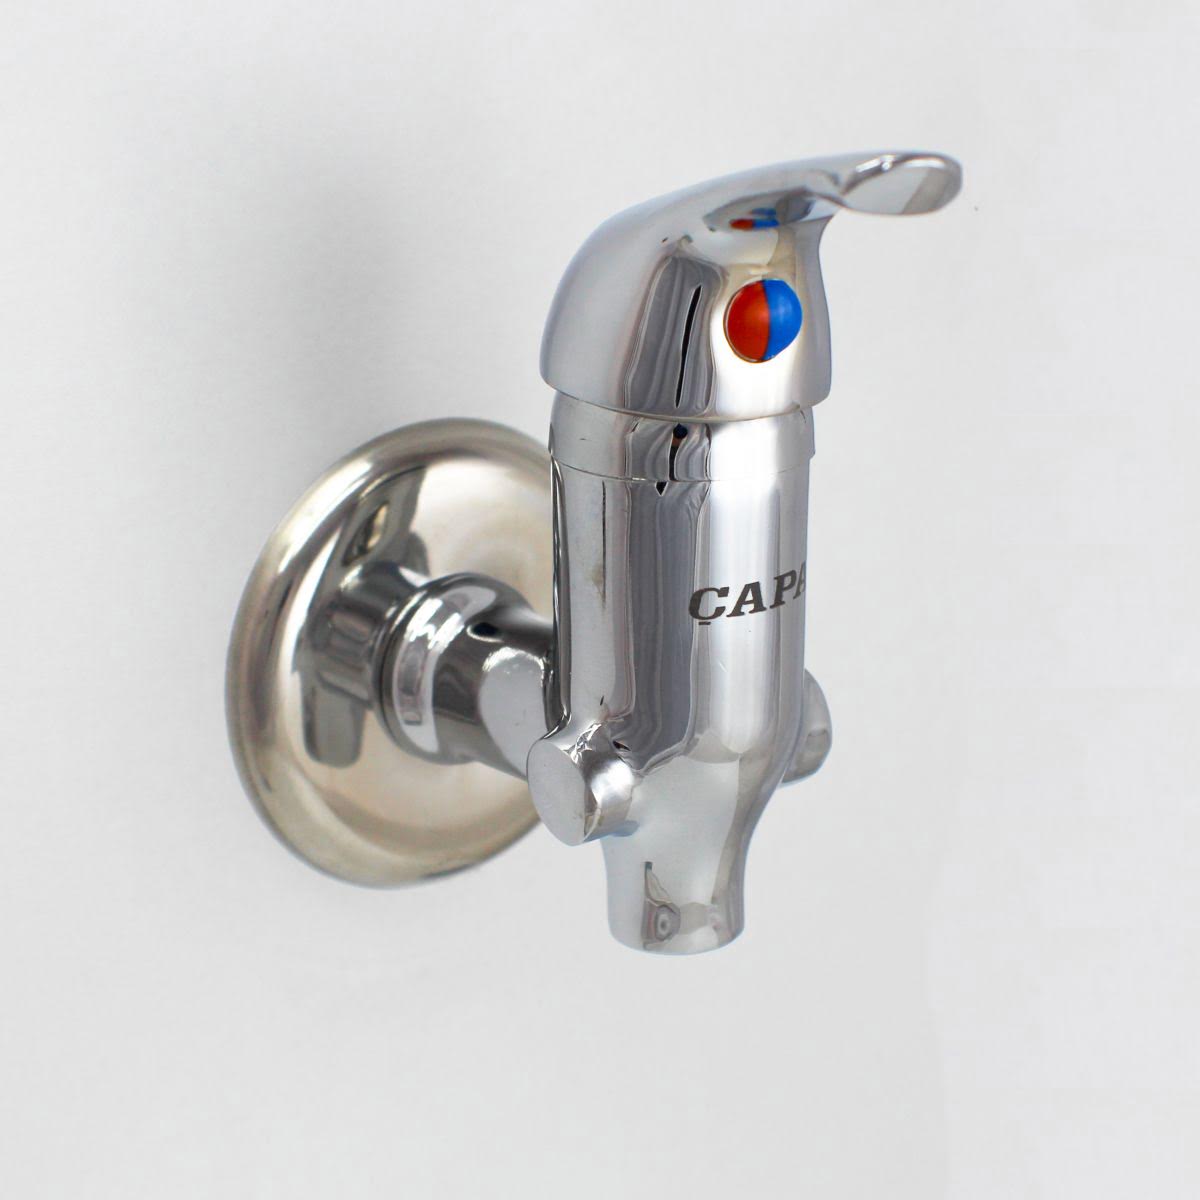 ÇAPA Aç - Kapa  sıcak - soğuk su taharet musluğu 5 yıl garantili sıva üstü musluk